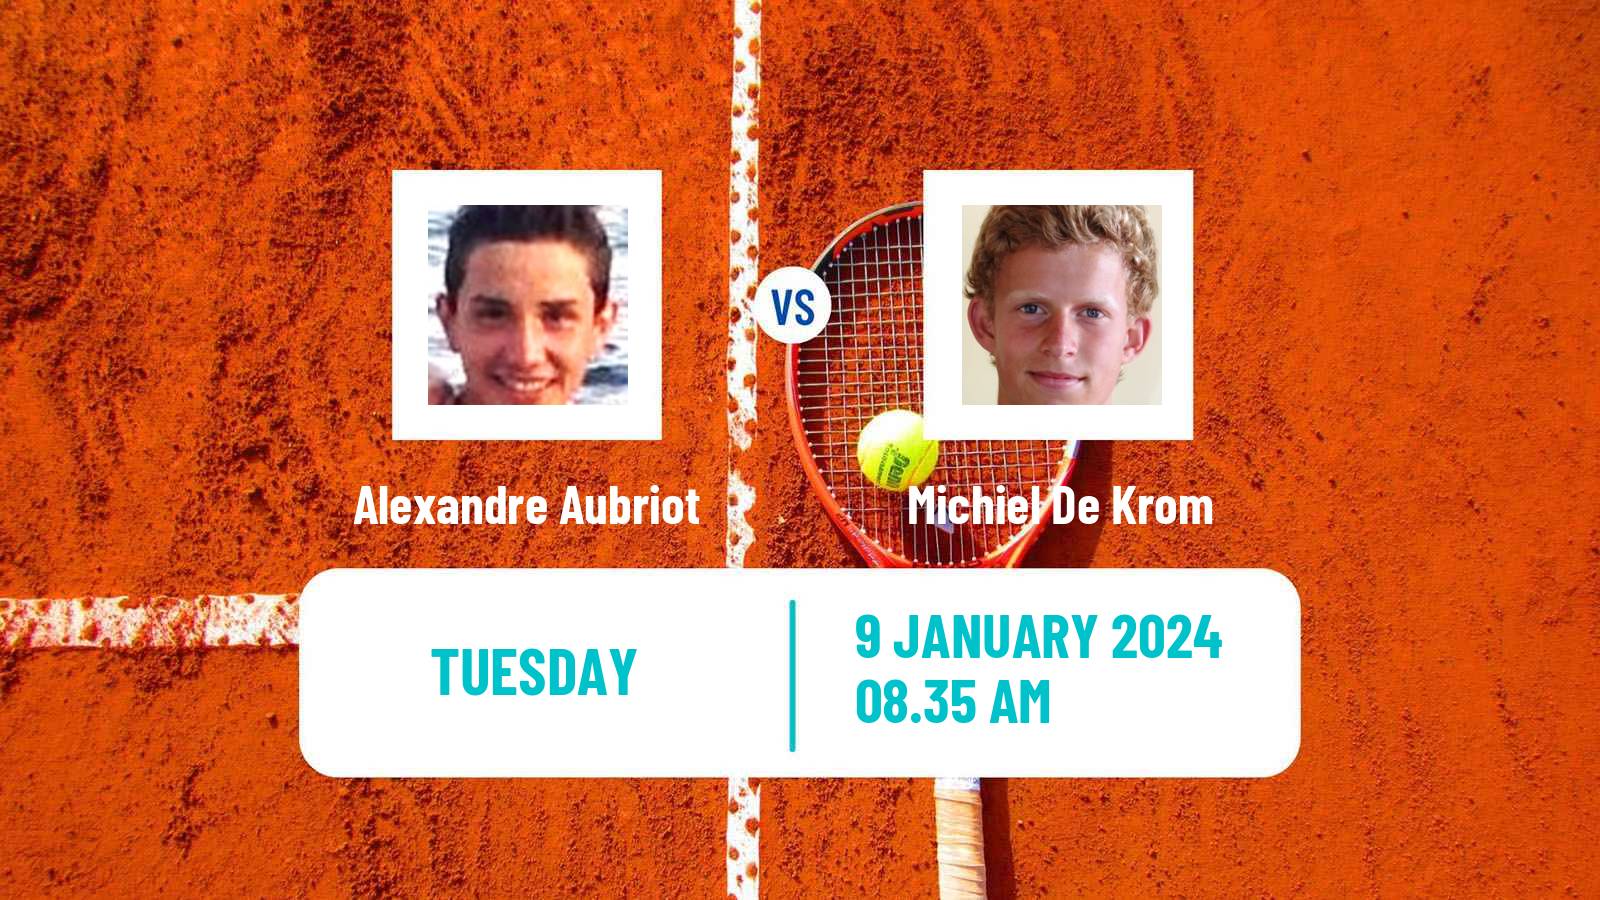 Tennis ITF M15 Manacor Men 2024 Alexandre Aubriot - Michiel De Krom